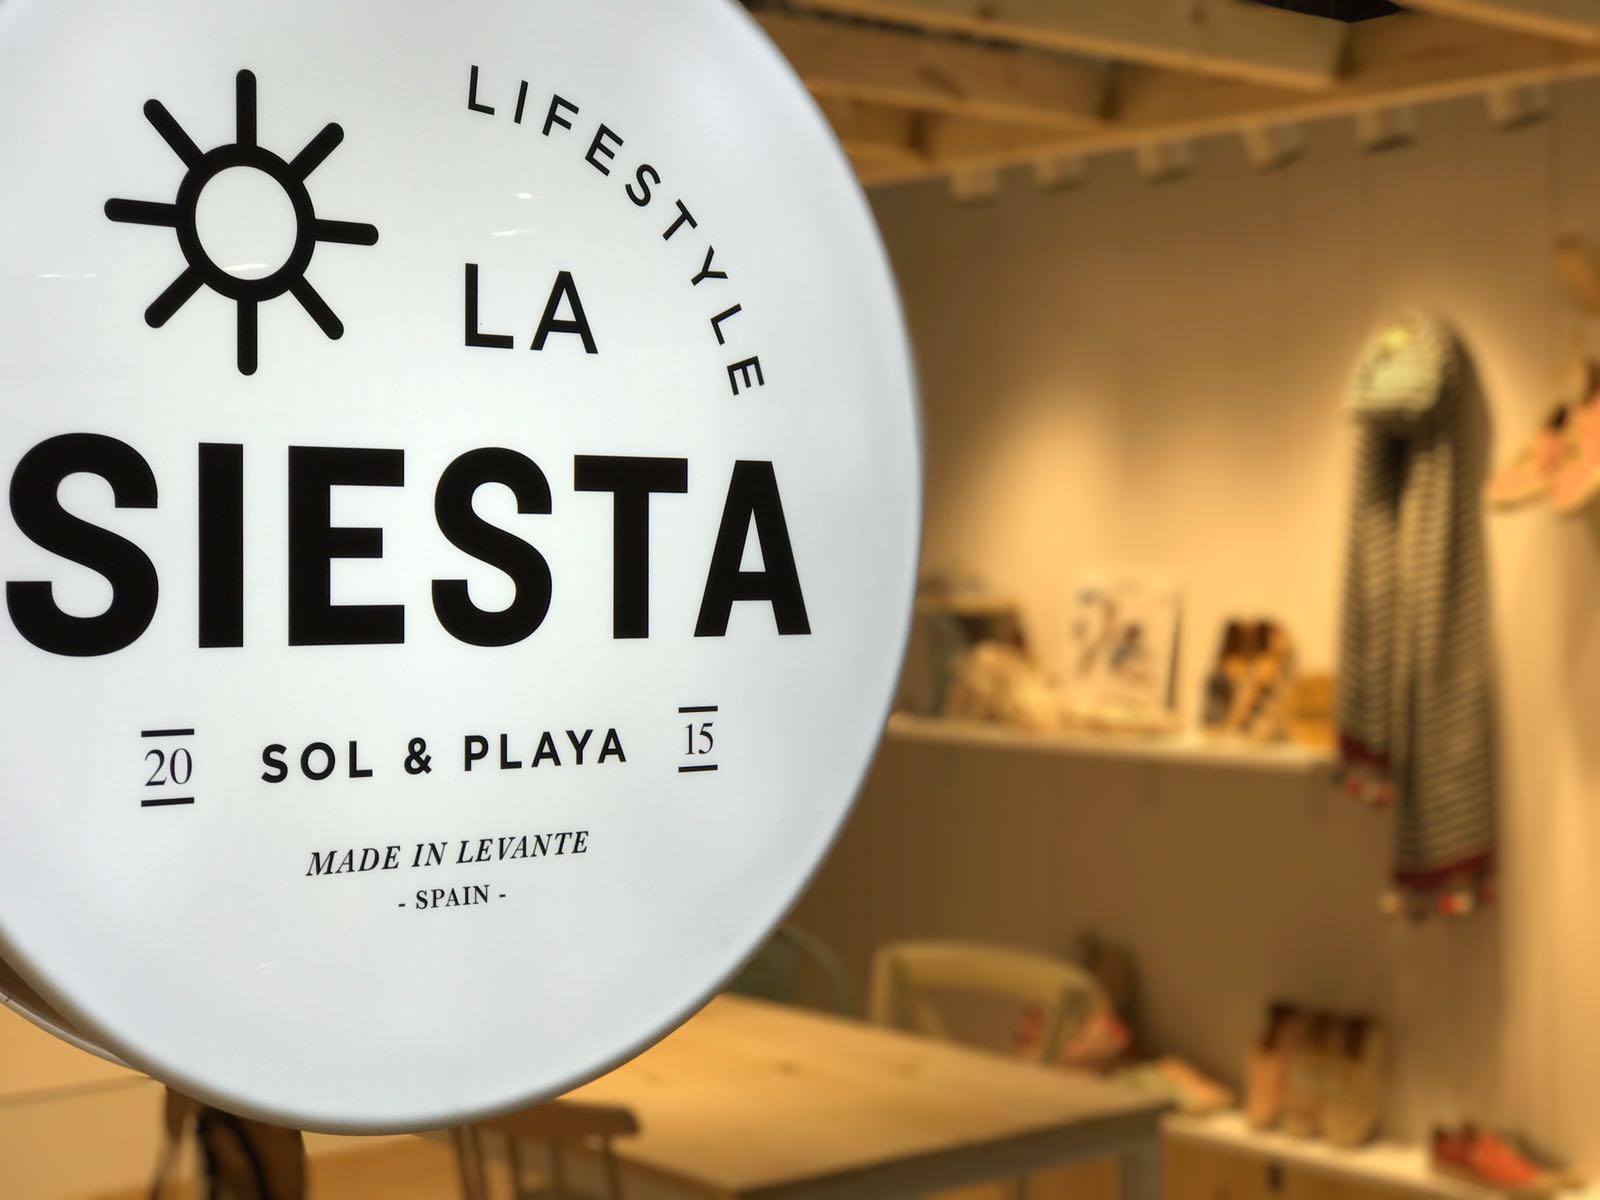 Aplicación logotipo La Siesta a stand de feria para esta marca de calzado alicantina de lifestyle mediterráneo.